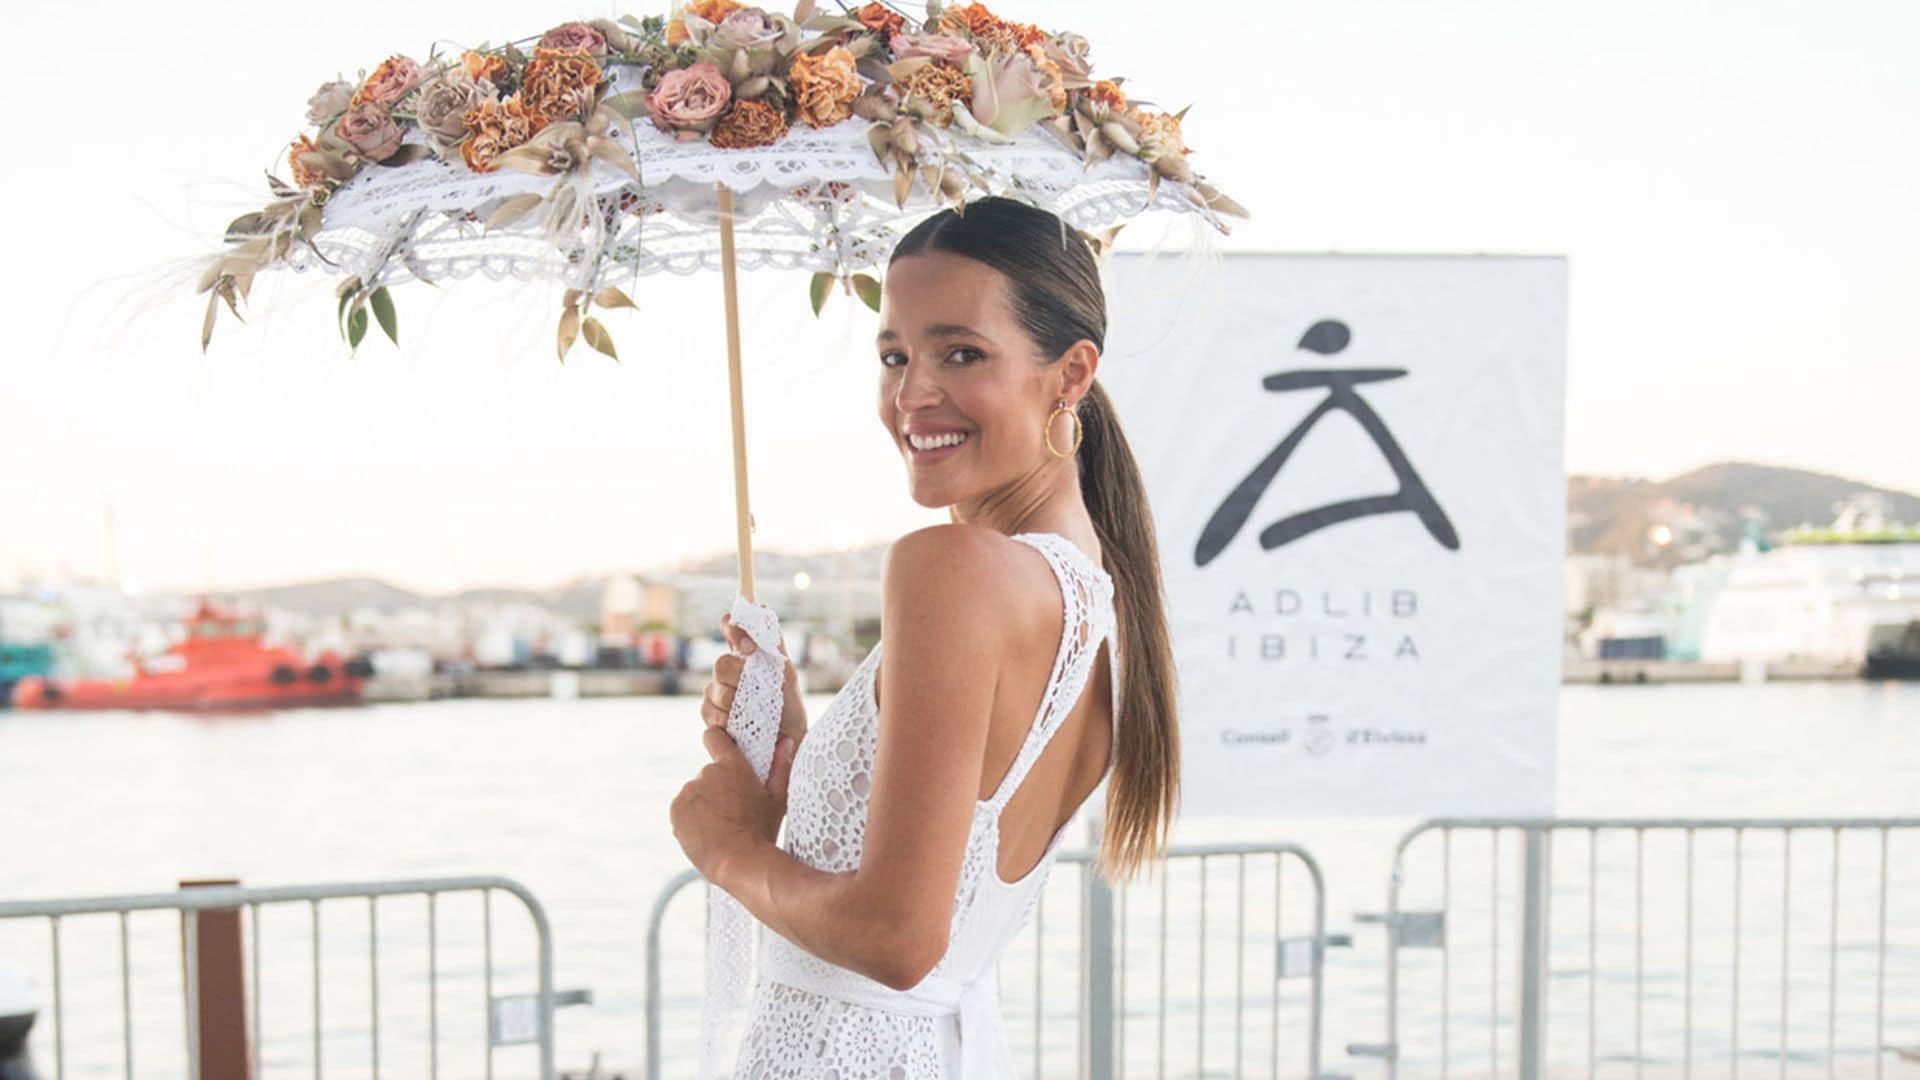 Malena Costa y Sandra Gago, las mejores embajadoras de la moda Adlib en Ibiza